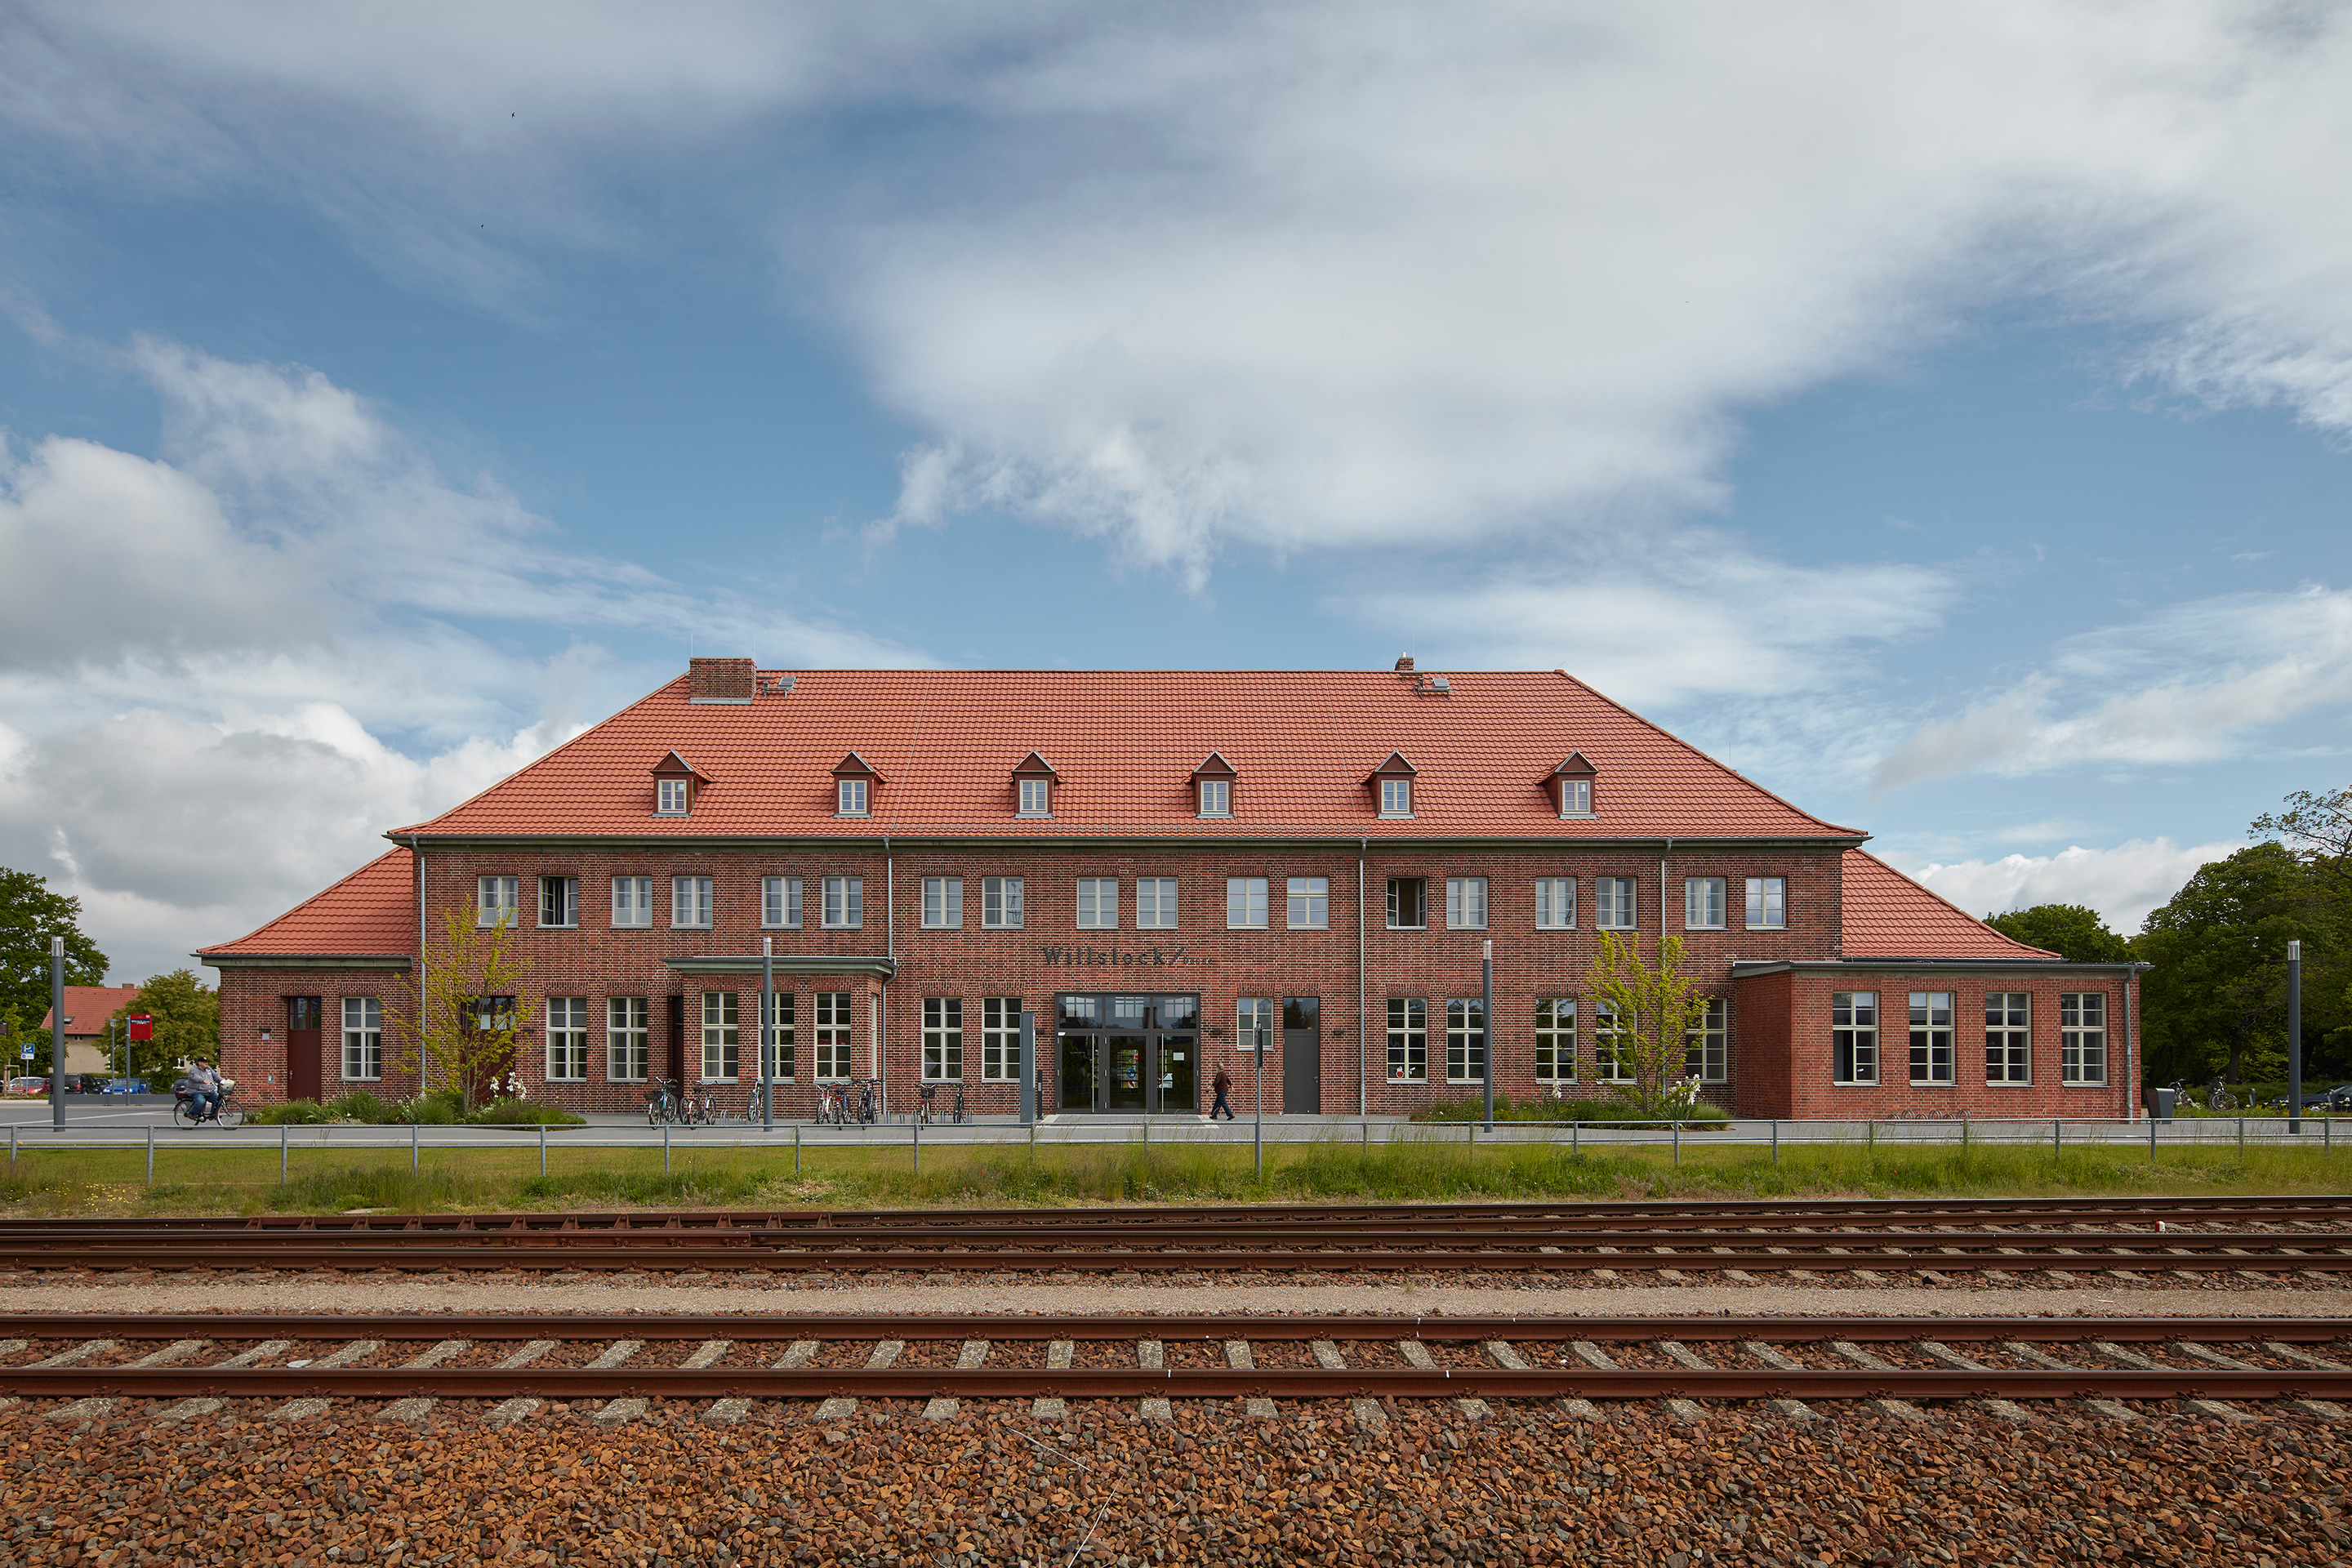 Bahnhof Wittstock/Dosse